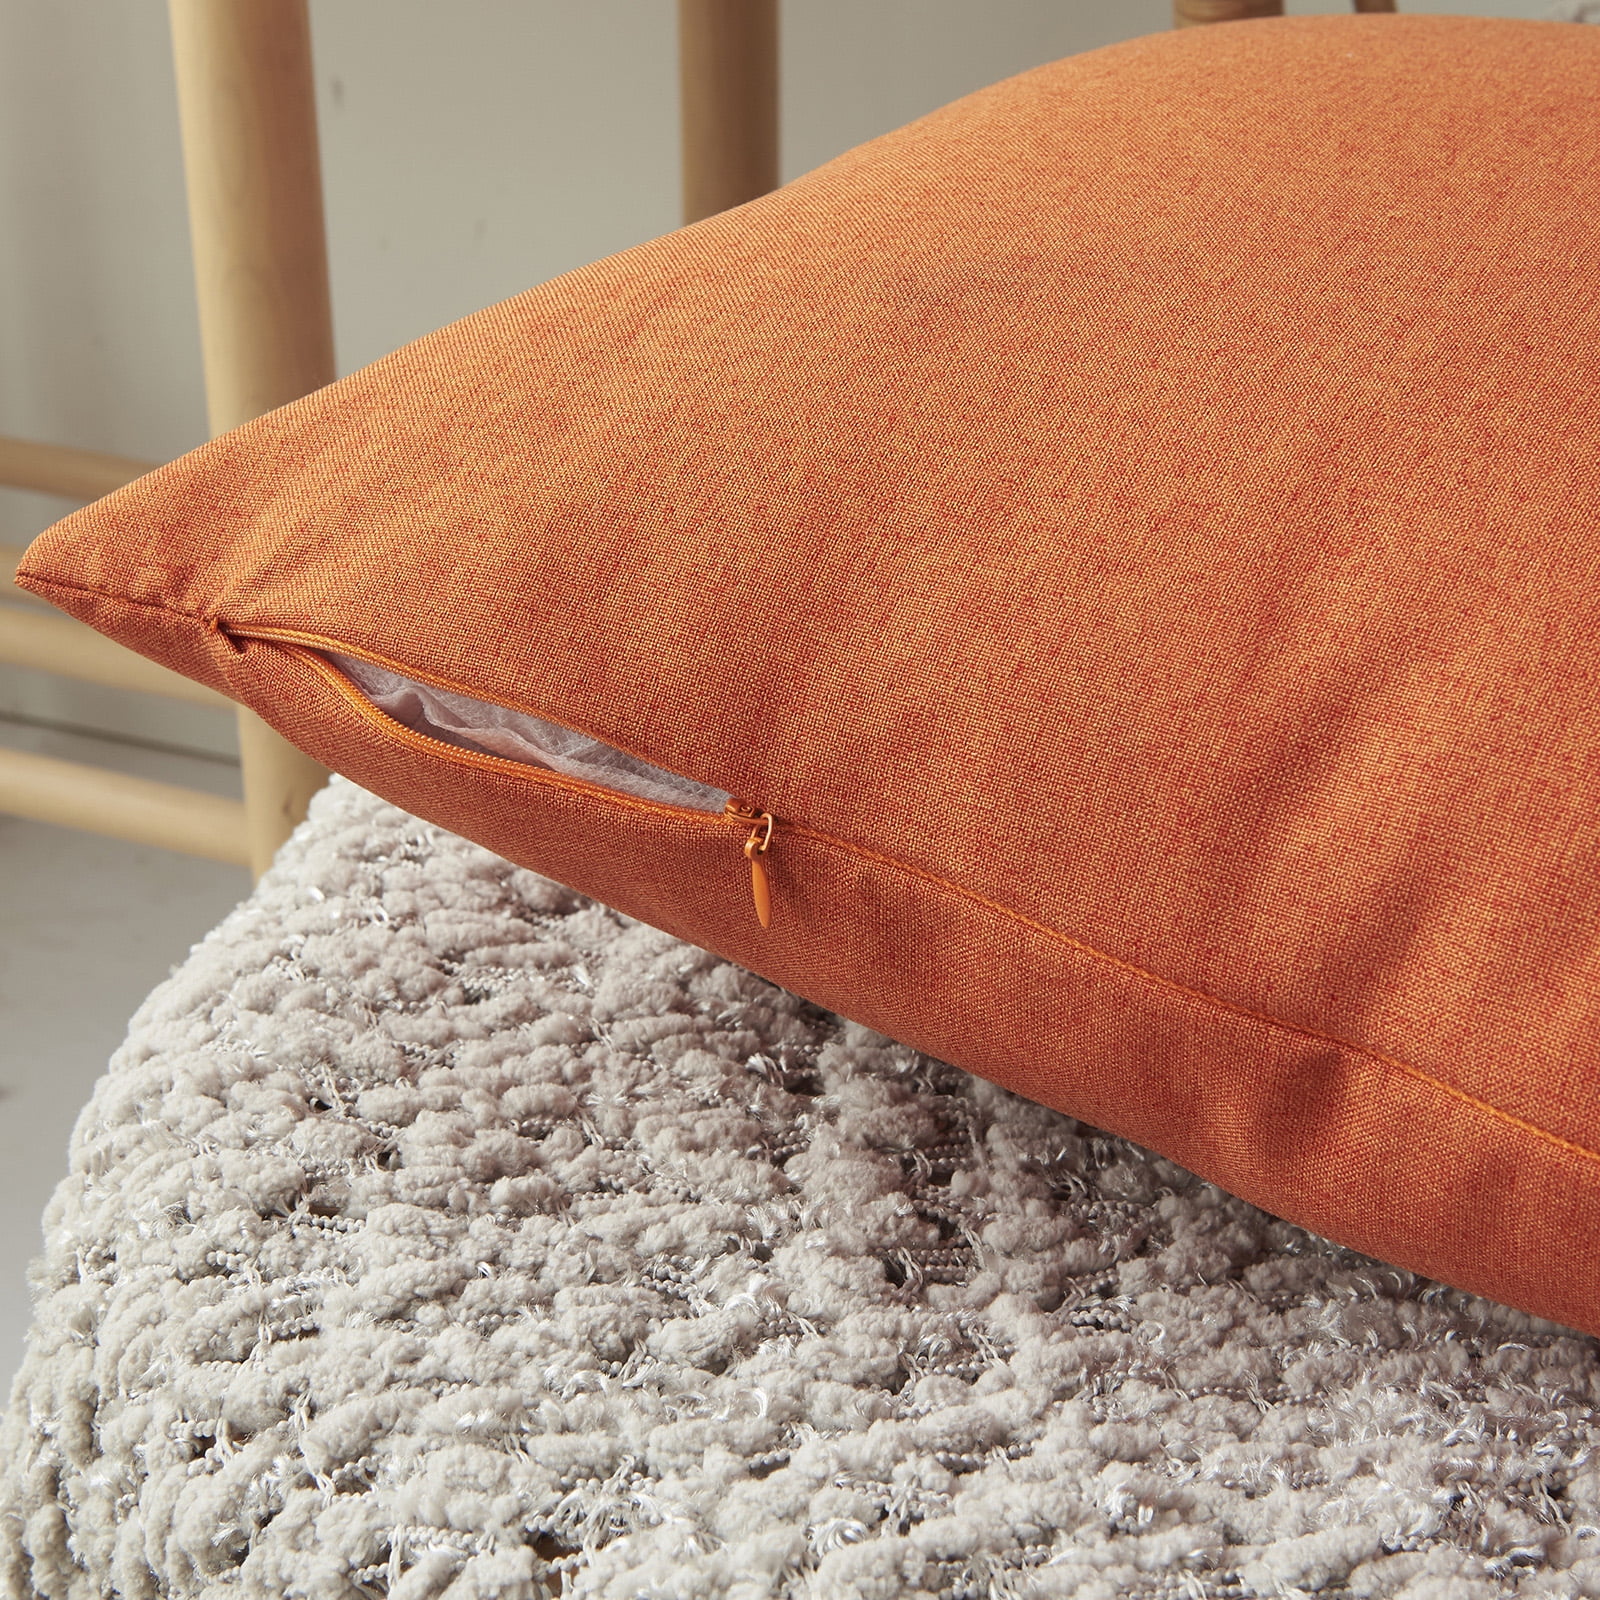 Kabuer Outdoor Waterproof Pillow Covers Outdoor Pillow Covers 18x18 inch Outdoor Patio Pillows Covers Set of 2 Orange